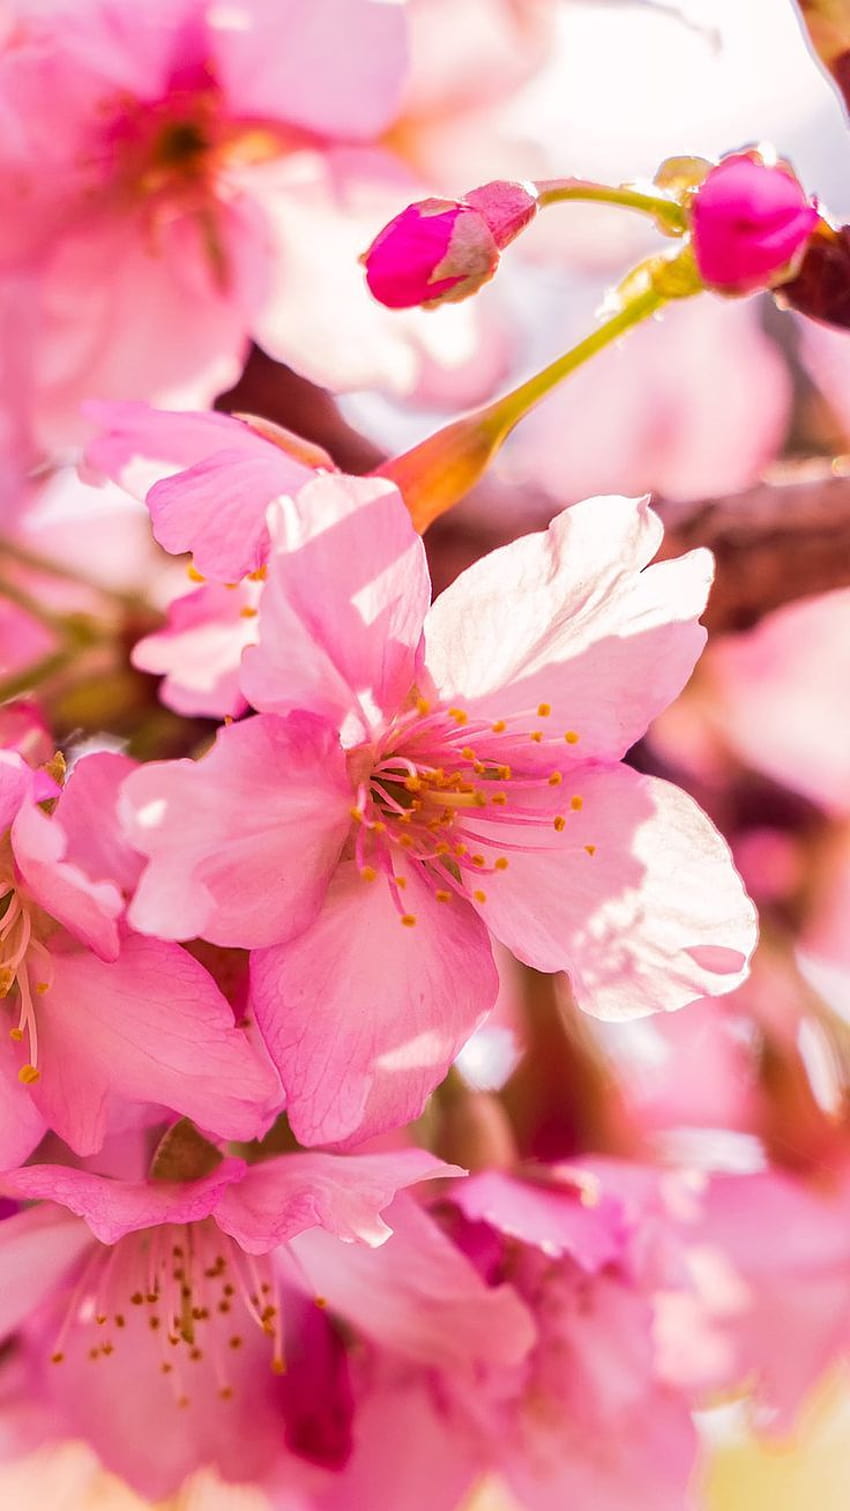 Chào đón mùa xuân mới với một bức tranh nền iPhone tươi sáng! Các bông hoa pastel và những cánh chim trên nền xanh lá cây sẽ đưa bạn đến với những cảm xúc mát mẻ, tươi mới và tràn đầy sức sống của mùa xuân. Hãy cùng tận hưởng không khí rực rỡ này qua bức tranh nền tuyệt đẹp này.